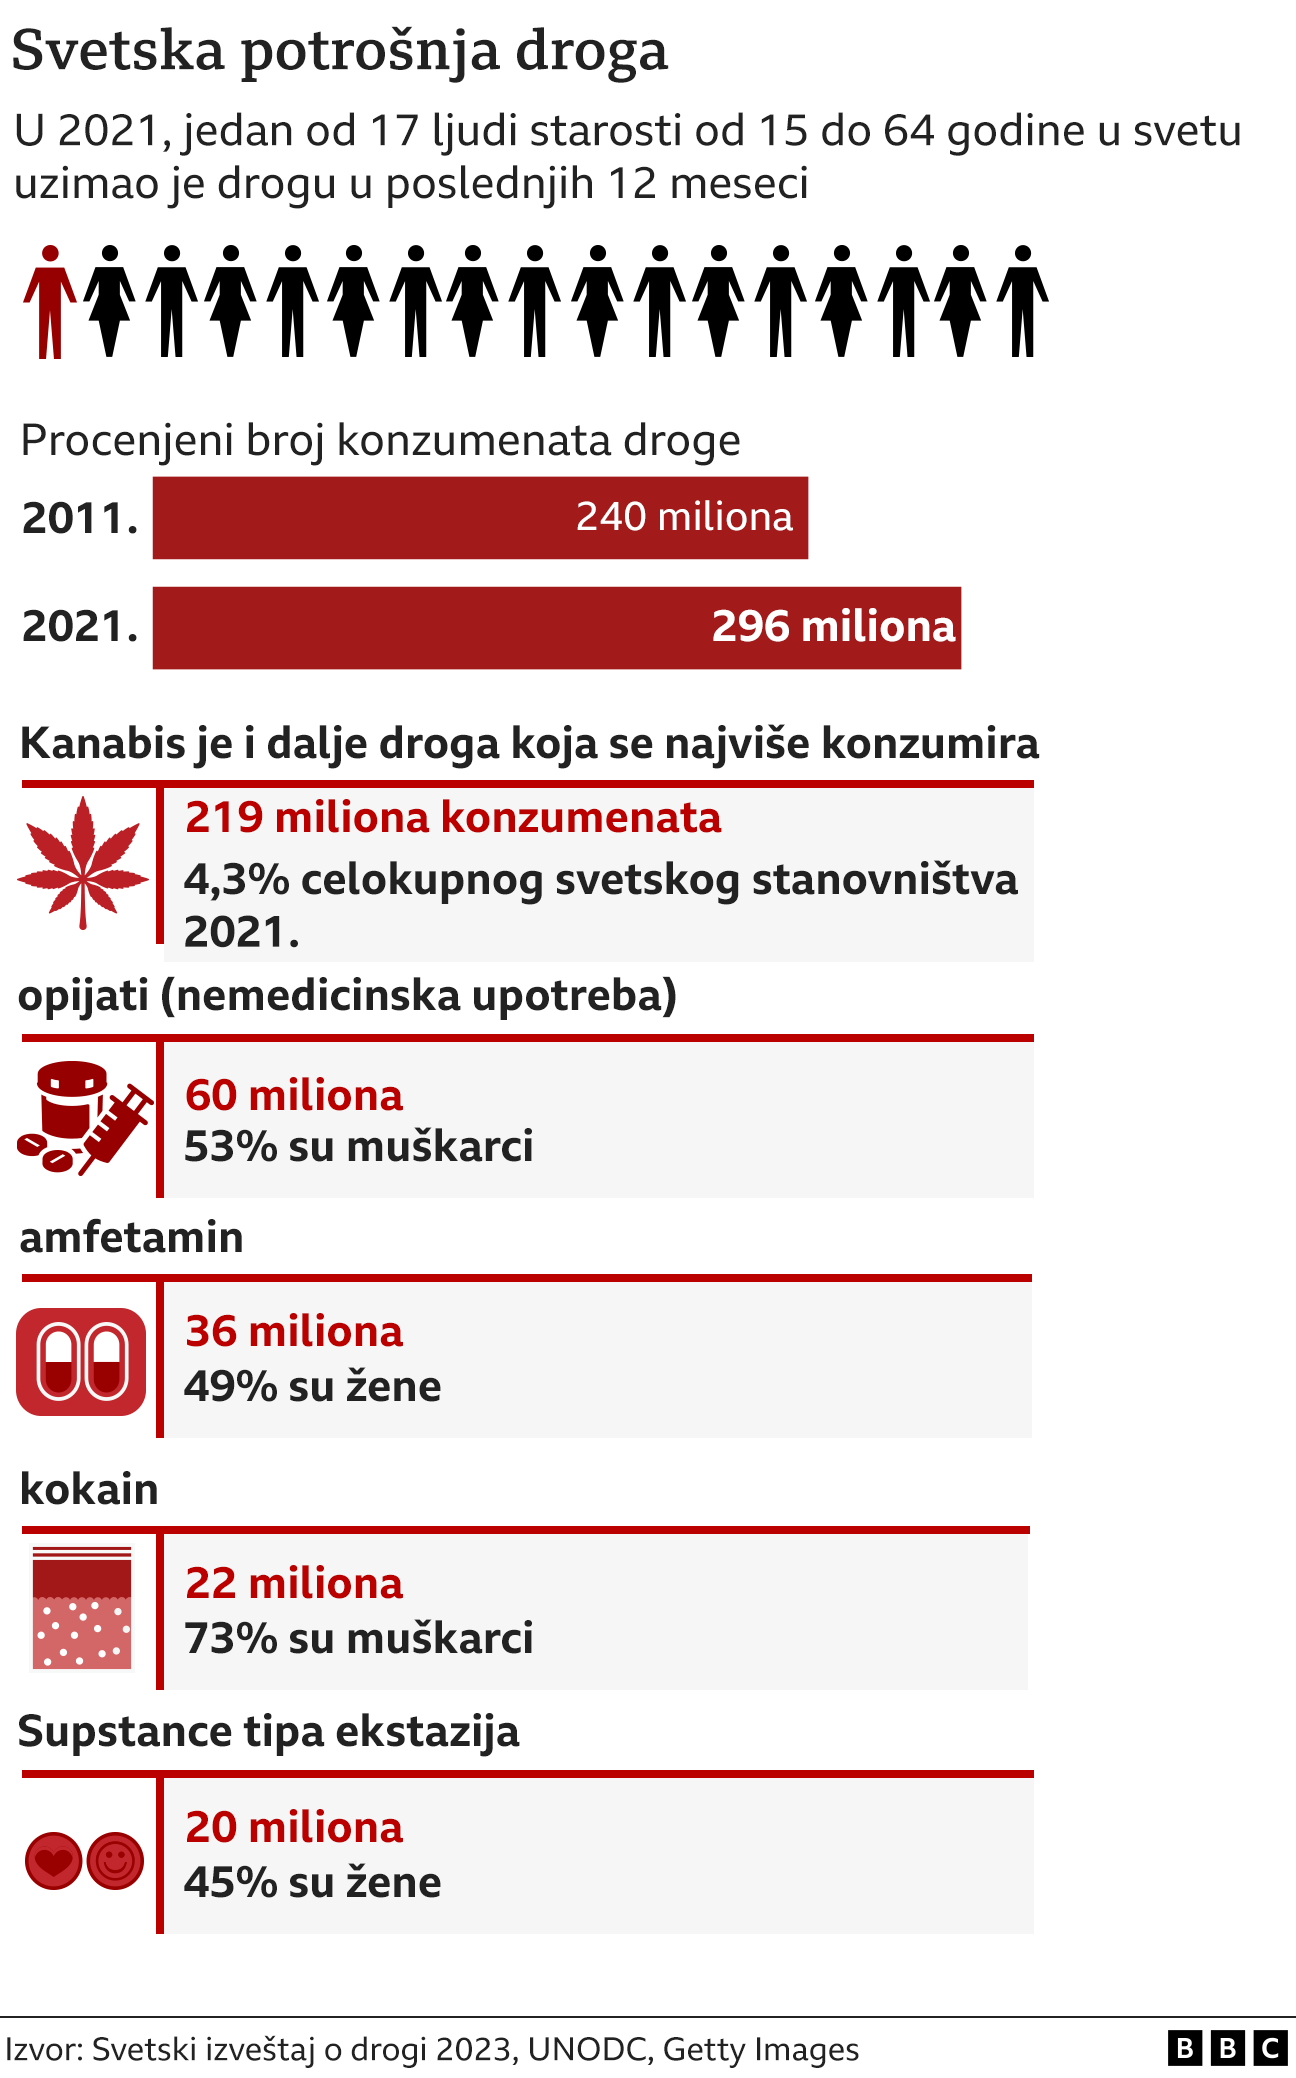 droge, upotreba droga, konzumacija droga, broj ljudi u svetu koji koristi drogu